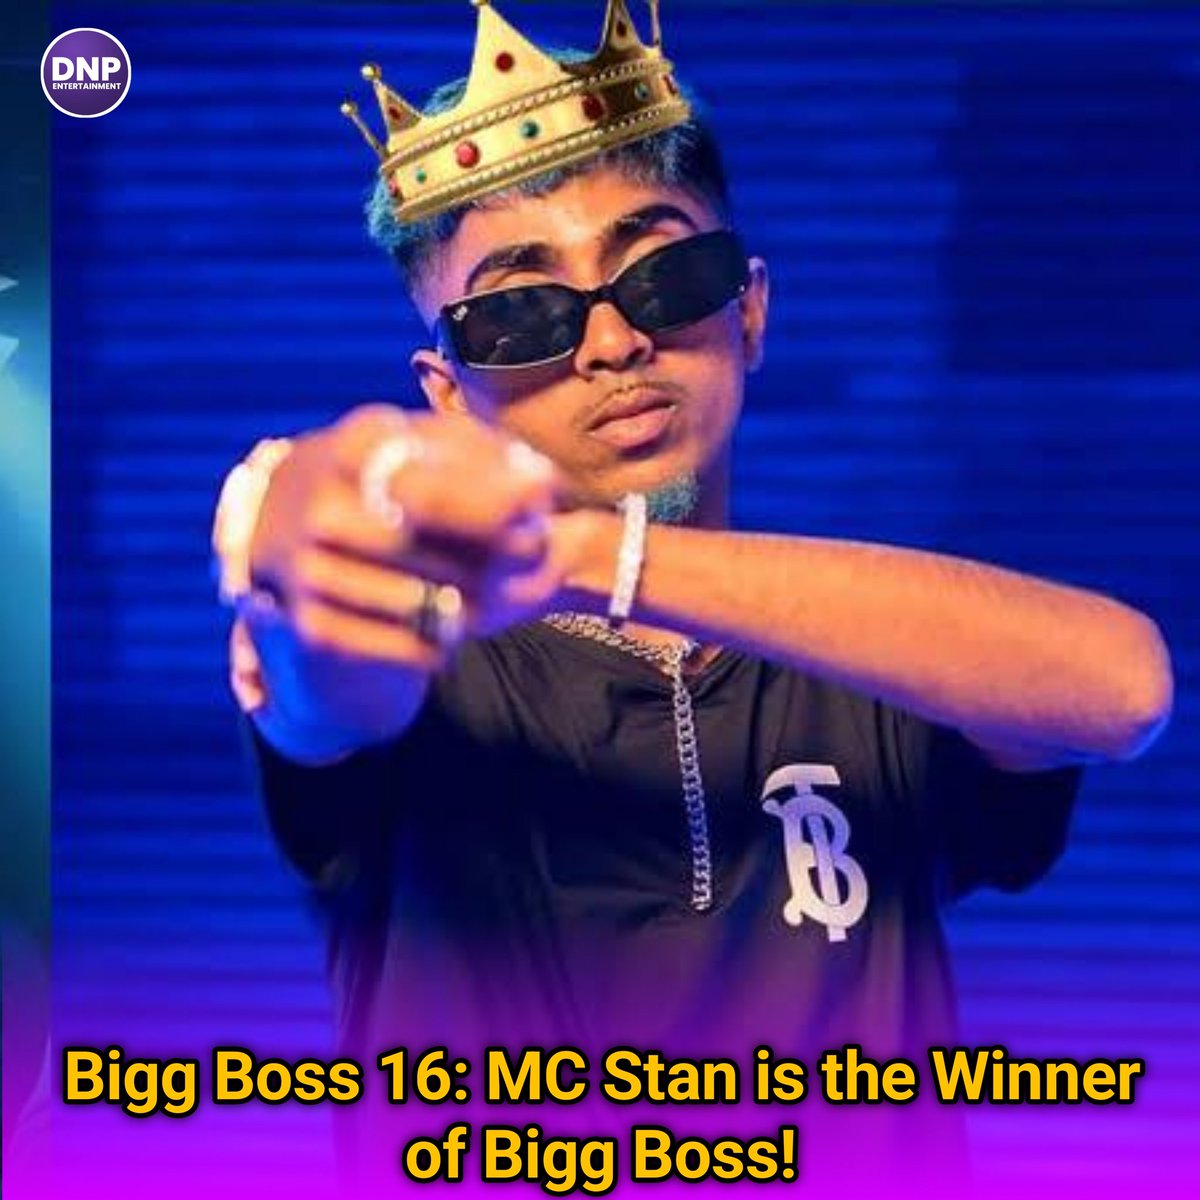 Bigg Boss 16: MC Stan is the Winner of Bigg Boss!
#DNPINDIA #MCstan #BB16Finale #BB16Winner #EntertainmentNews